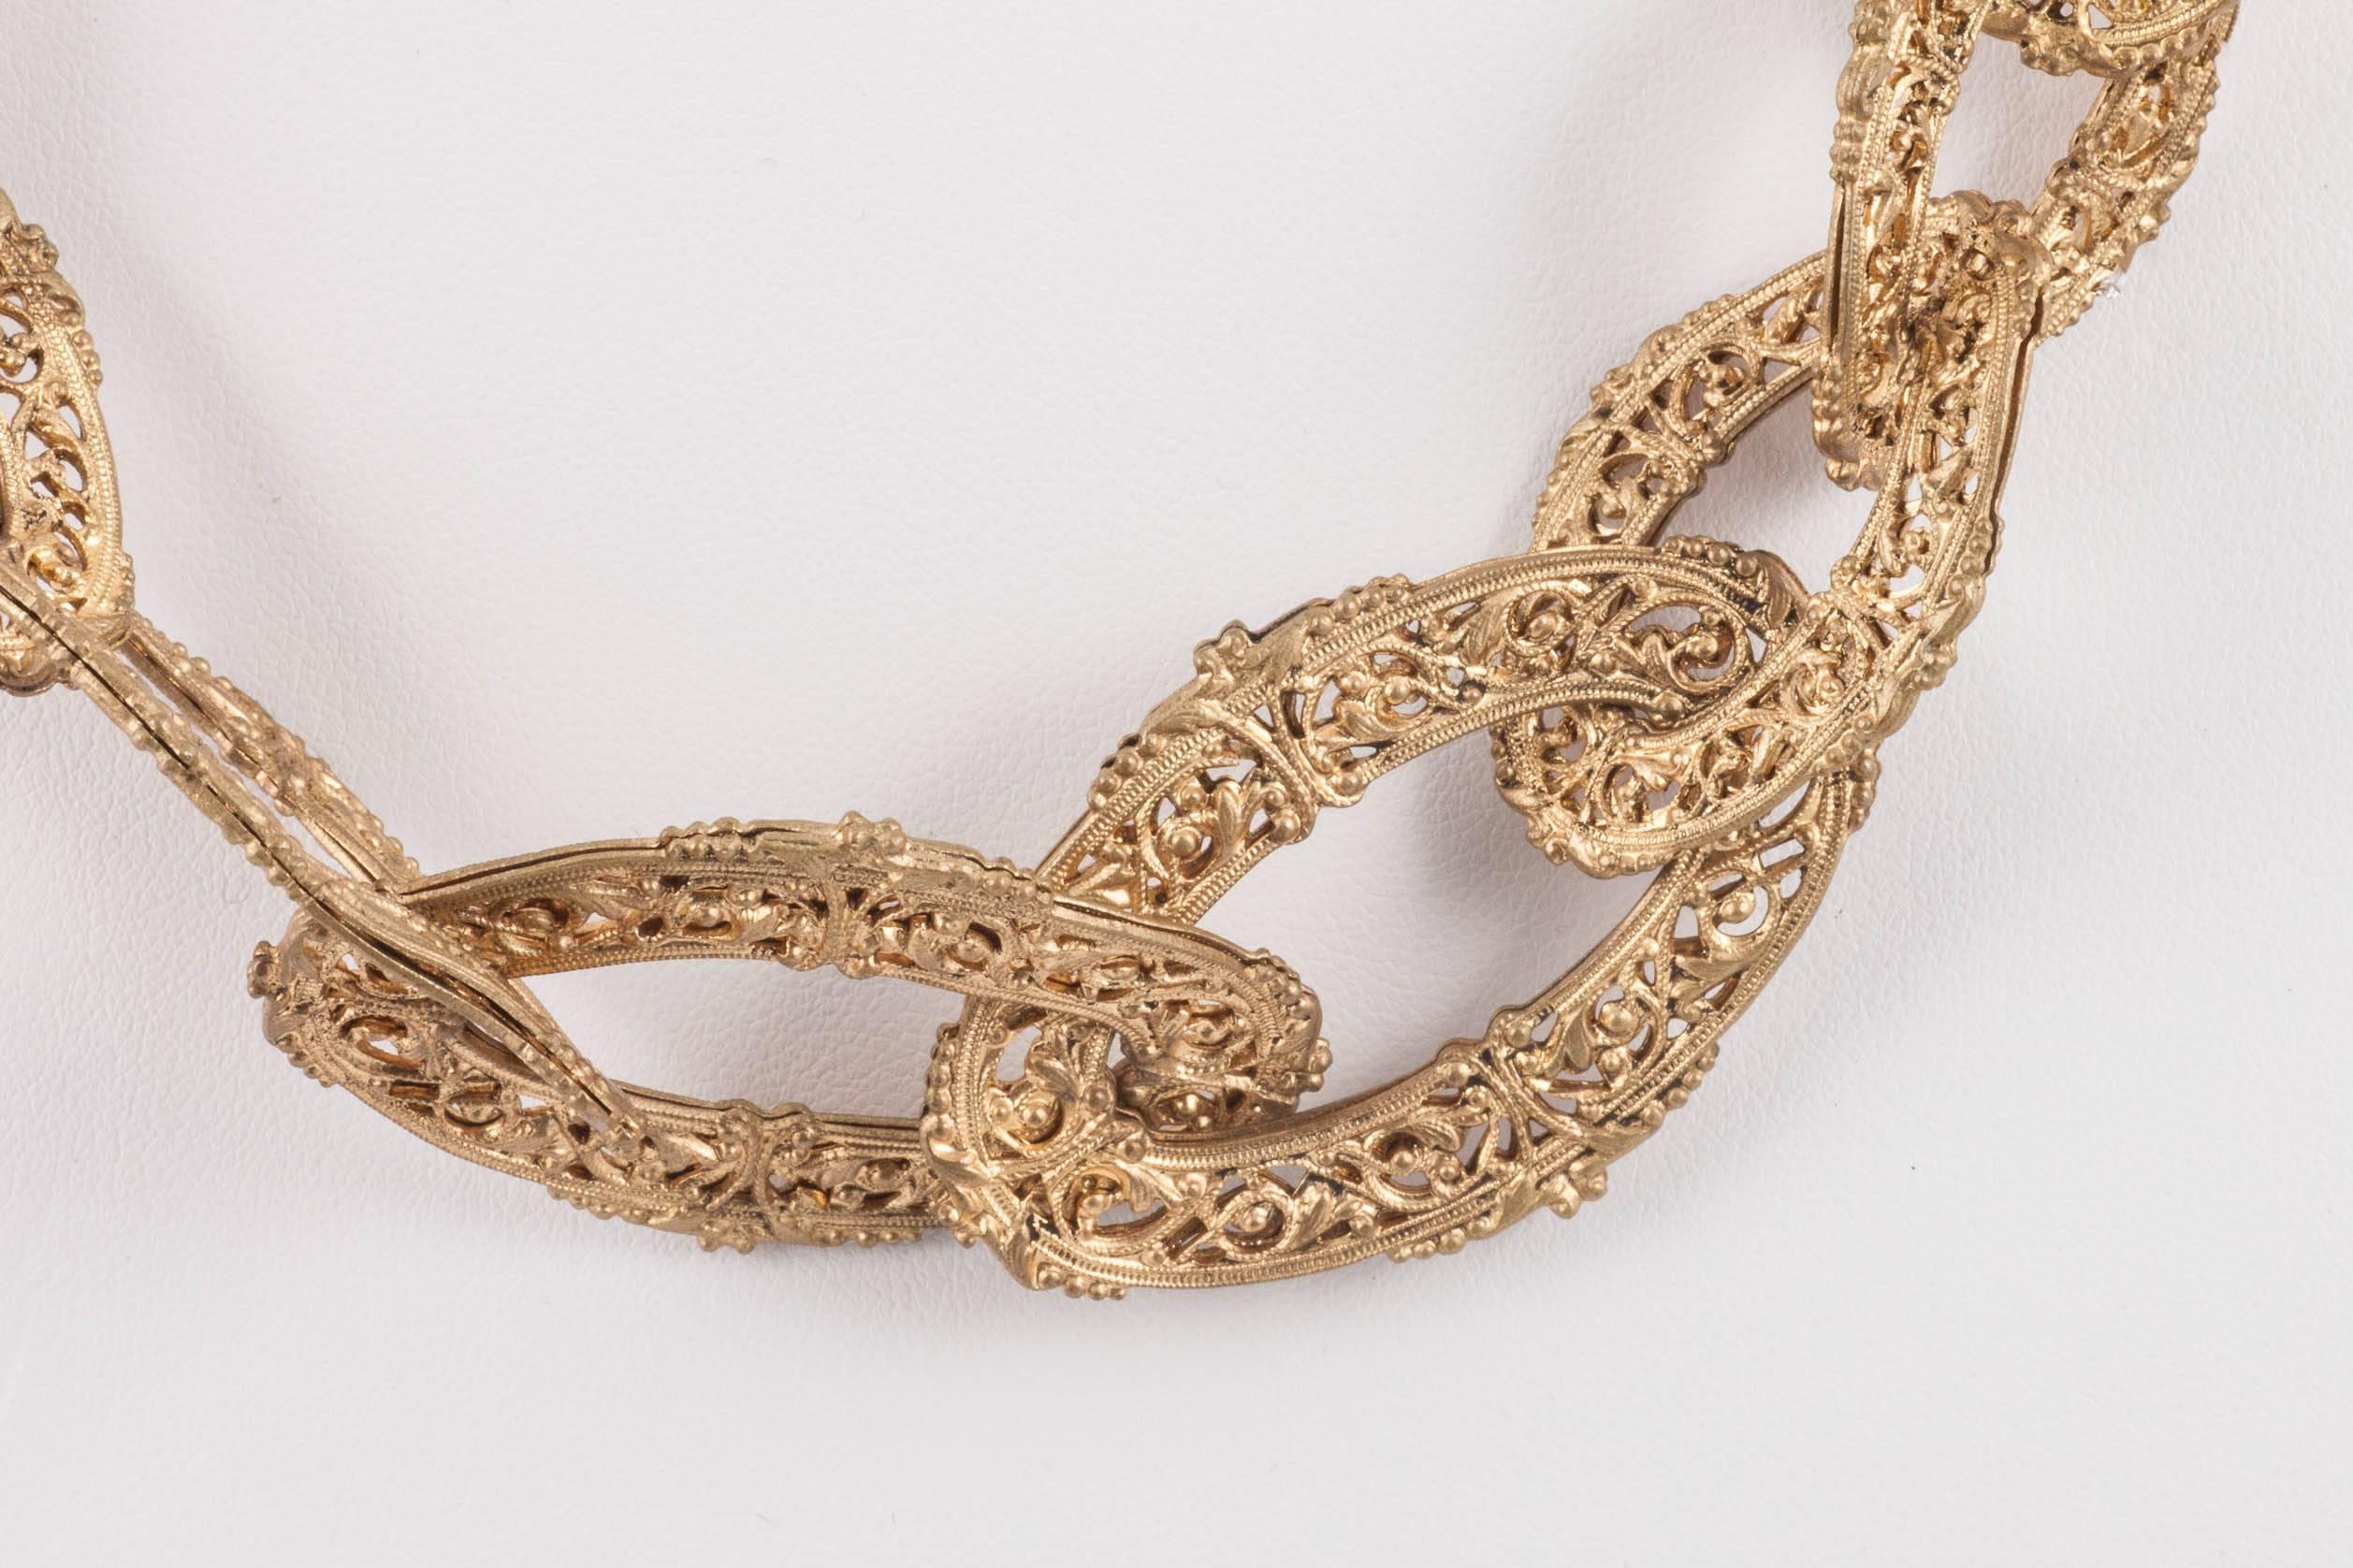 Eine seltene und sehr dekorative Kette von Chanel aus den frühen 1960er Jahren, die im byzantinischen Stil aus zarten, filigranen Metallgliedern besteht, die eine abgestufte Kette bilden. Ein sehr ikonischer Stil, und einfach in der alten Art und